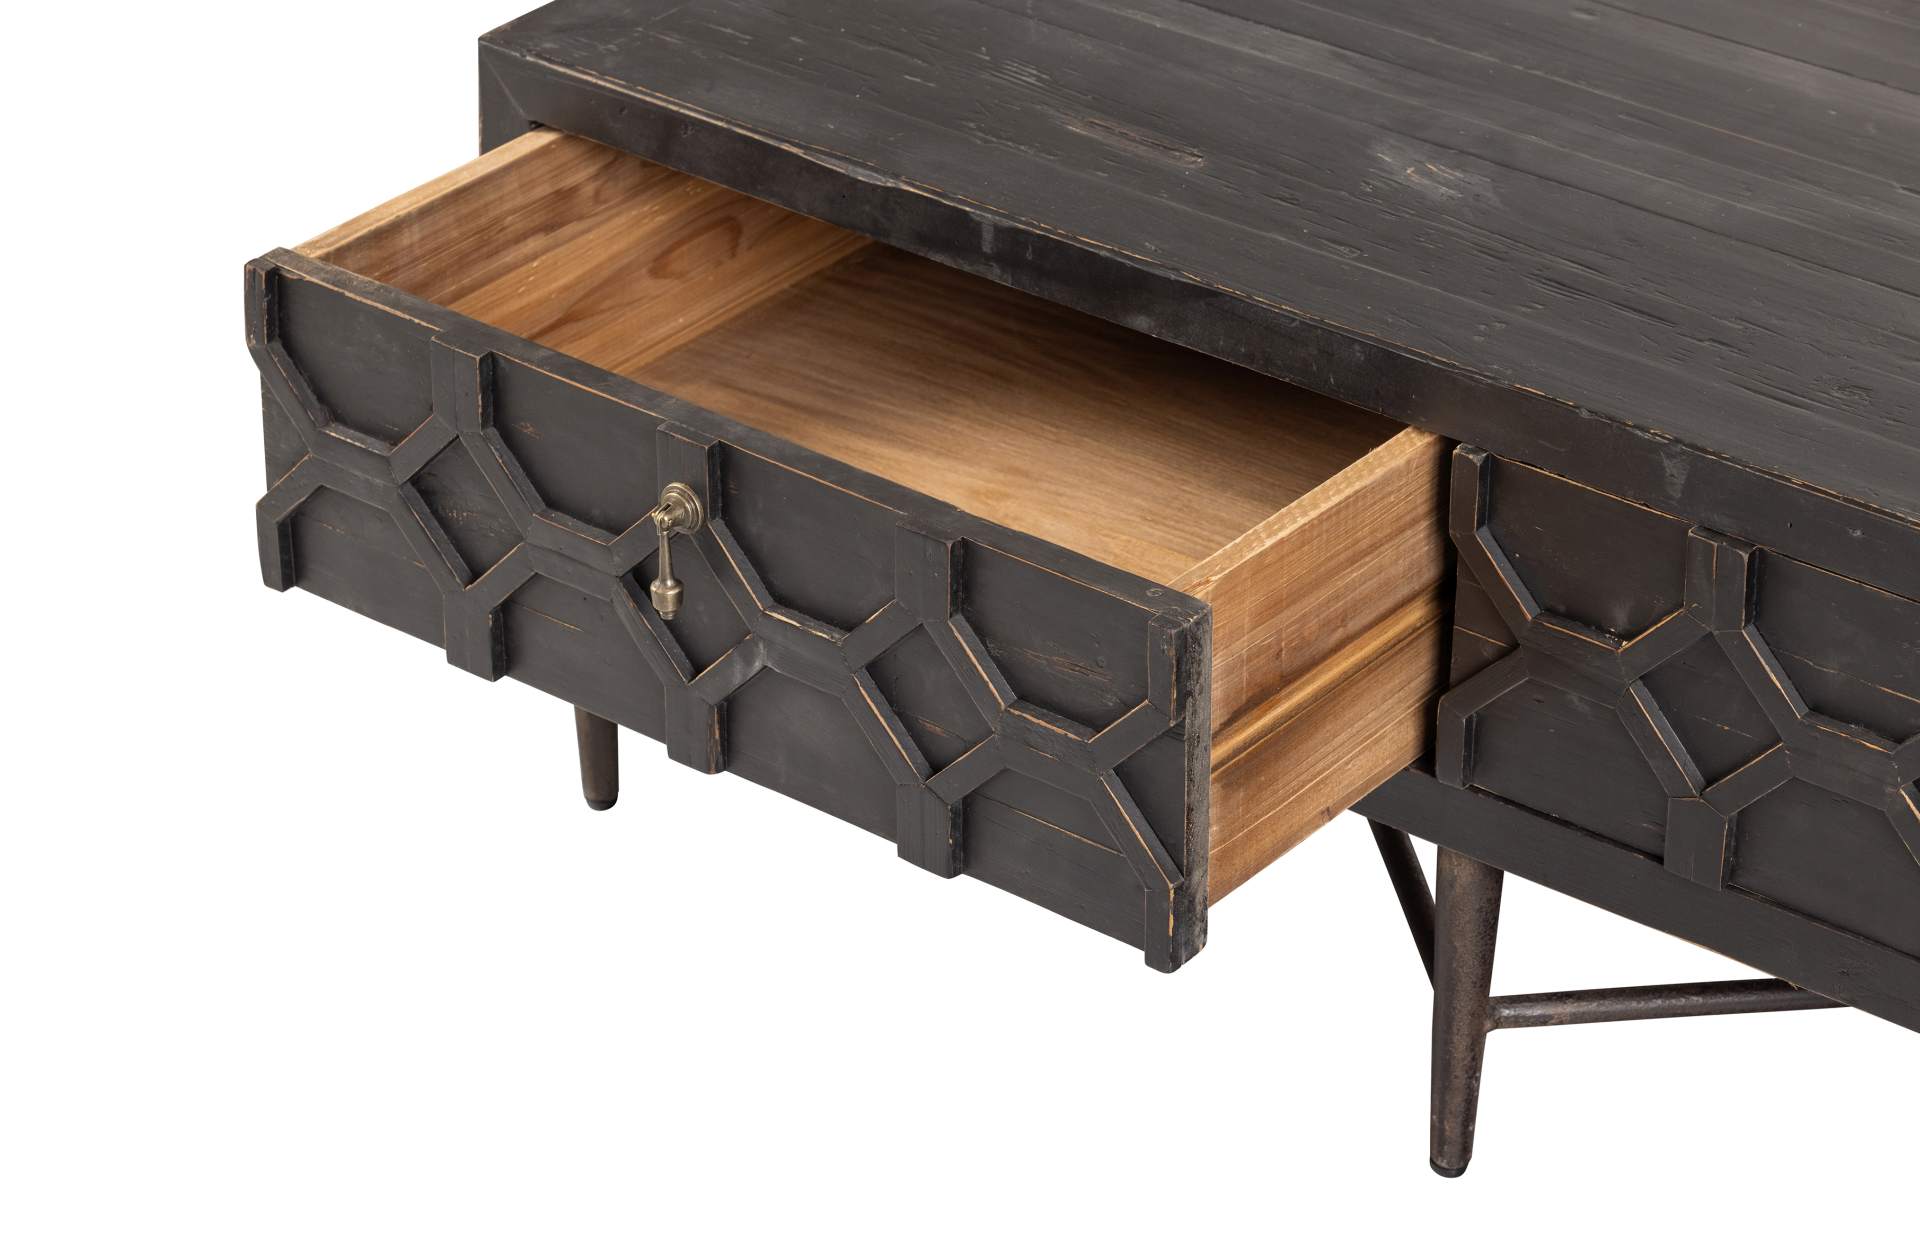 Der Couchtisch Bequest überzeugt mit seinem klassischem aber auch schönen Design. Gefertigt wurde der Tisch aus Holz und Metall. Er verfügt über zwei Schubladen mit Schnitzereien.